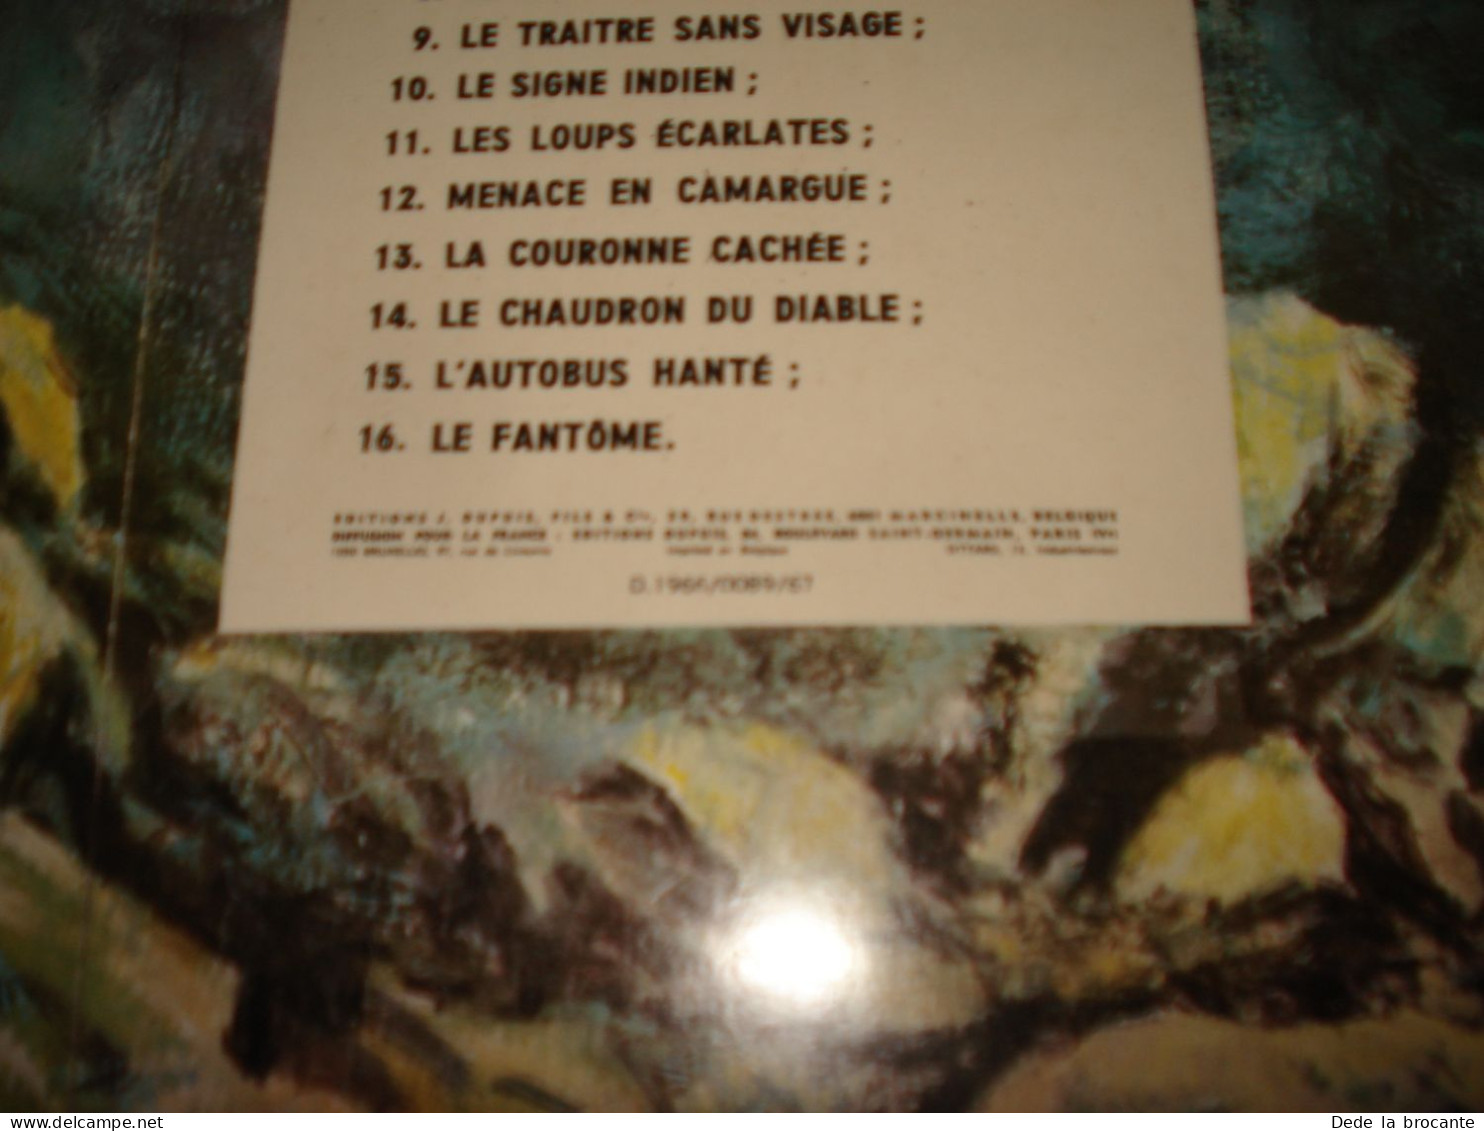 C54 (1) / Patrouille des castors 14 " Le chaudron du diable " réédition de 1971